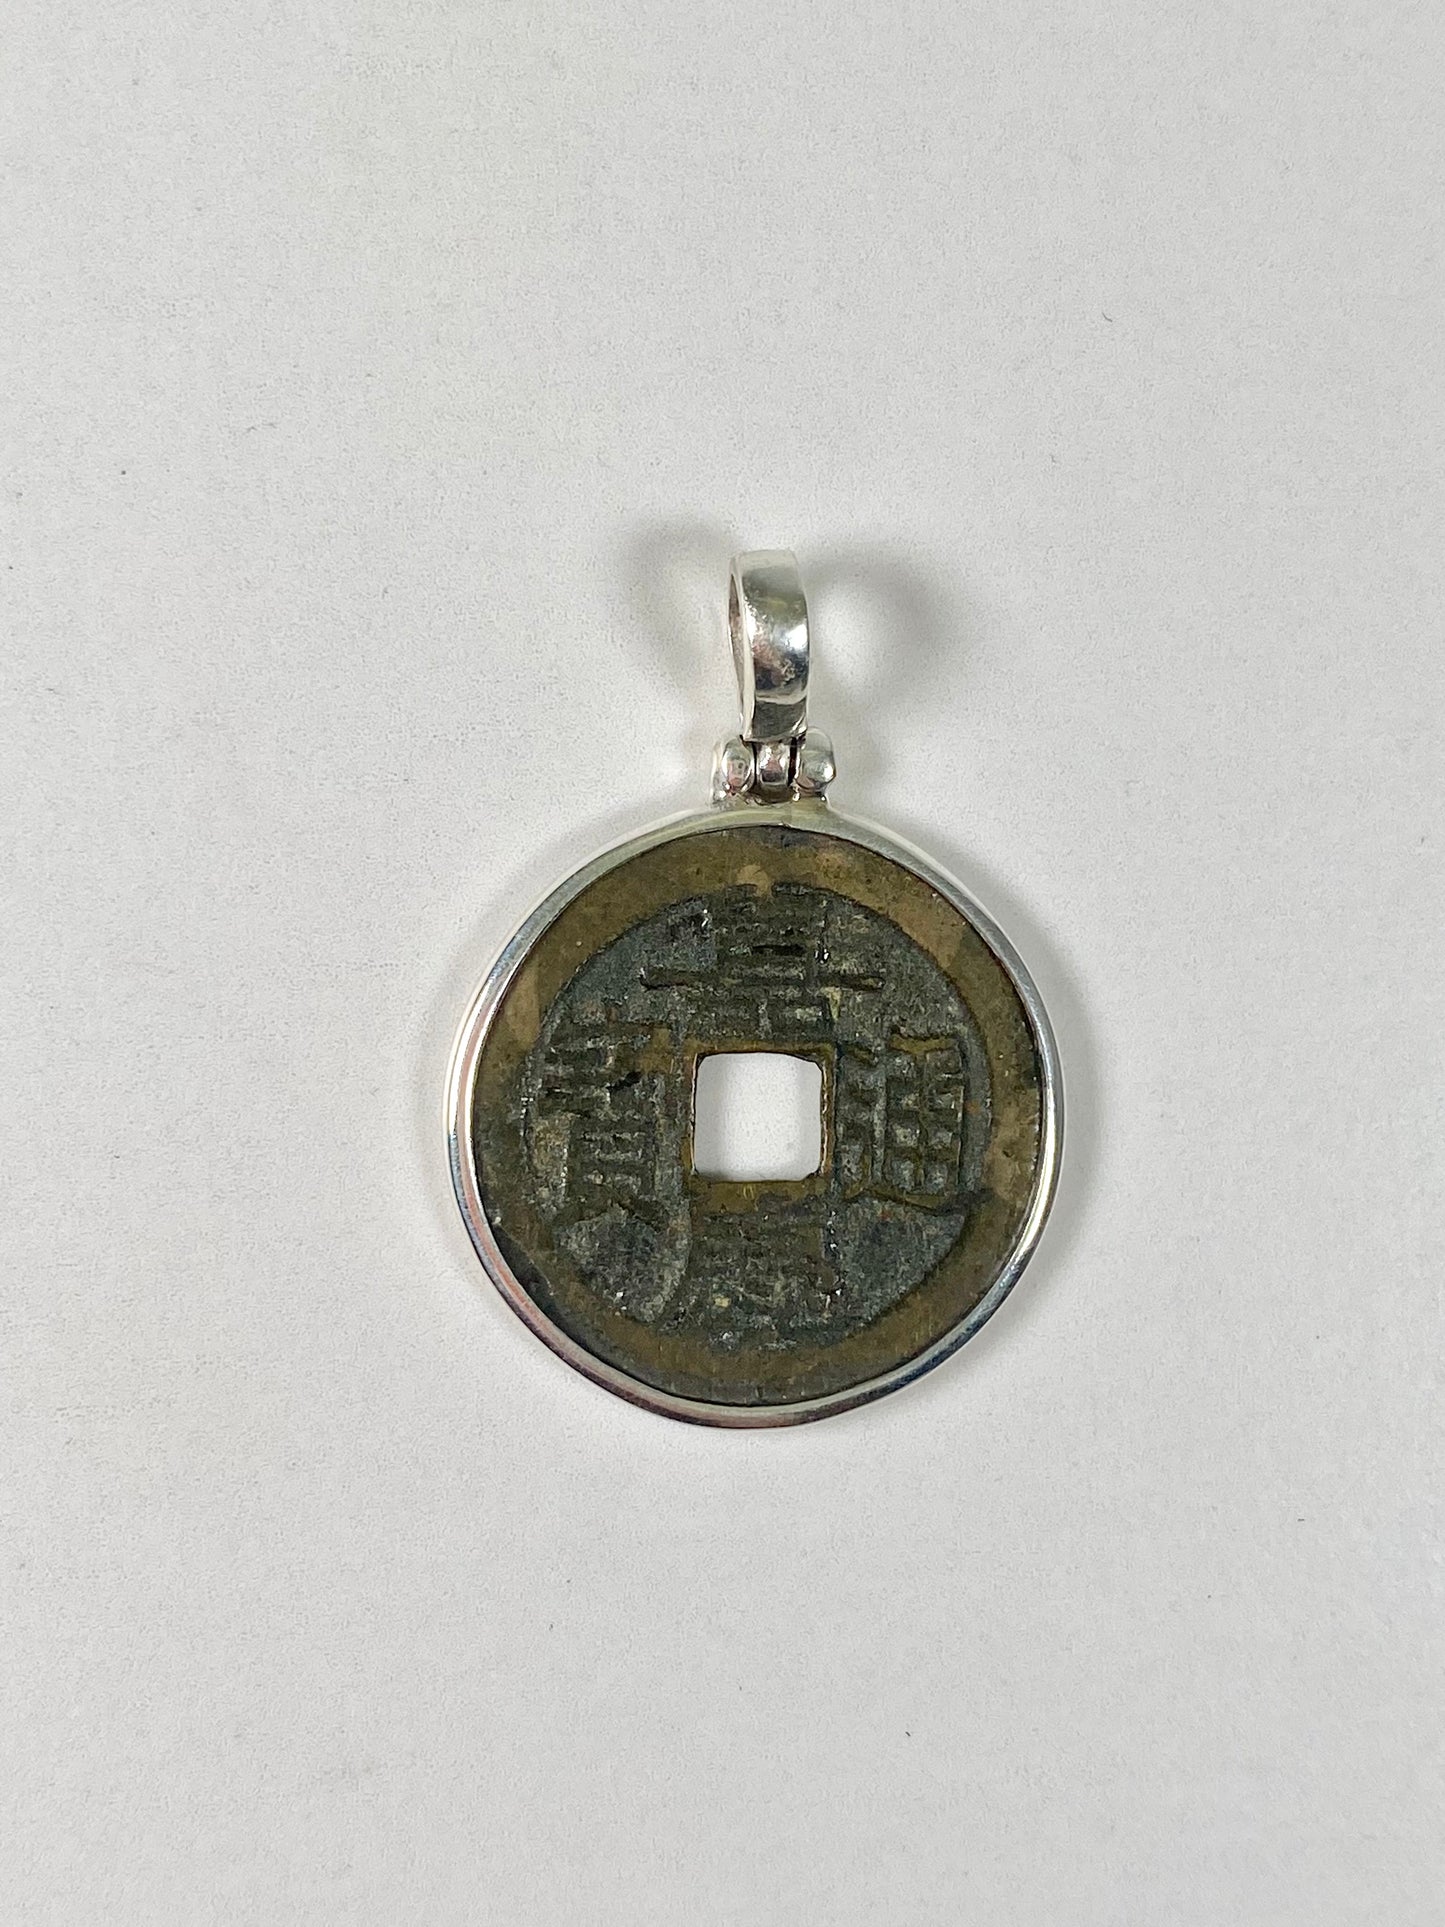 古董清朝嘉庆年间（1796-1820 年）纯银钱币吊坠